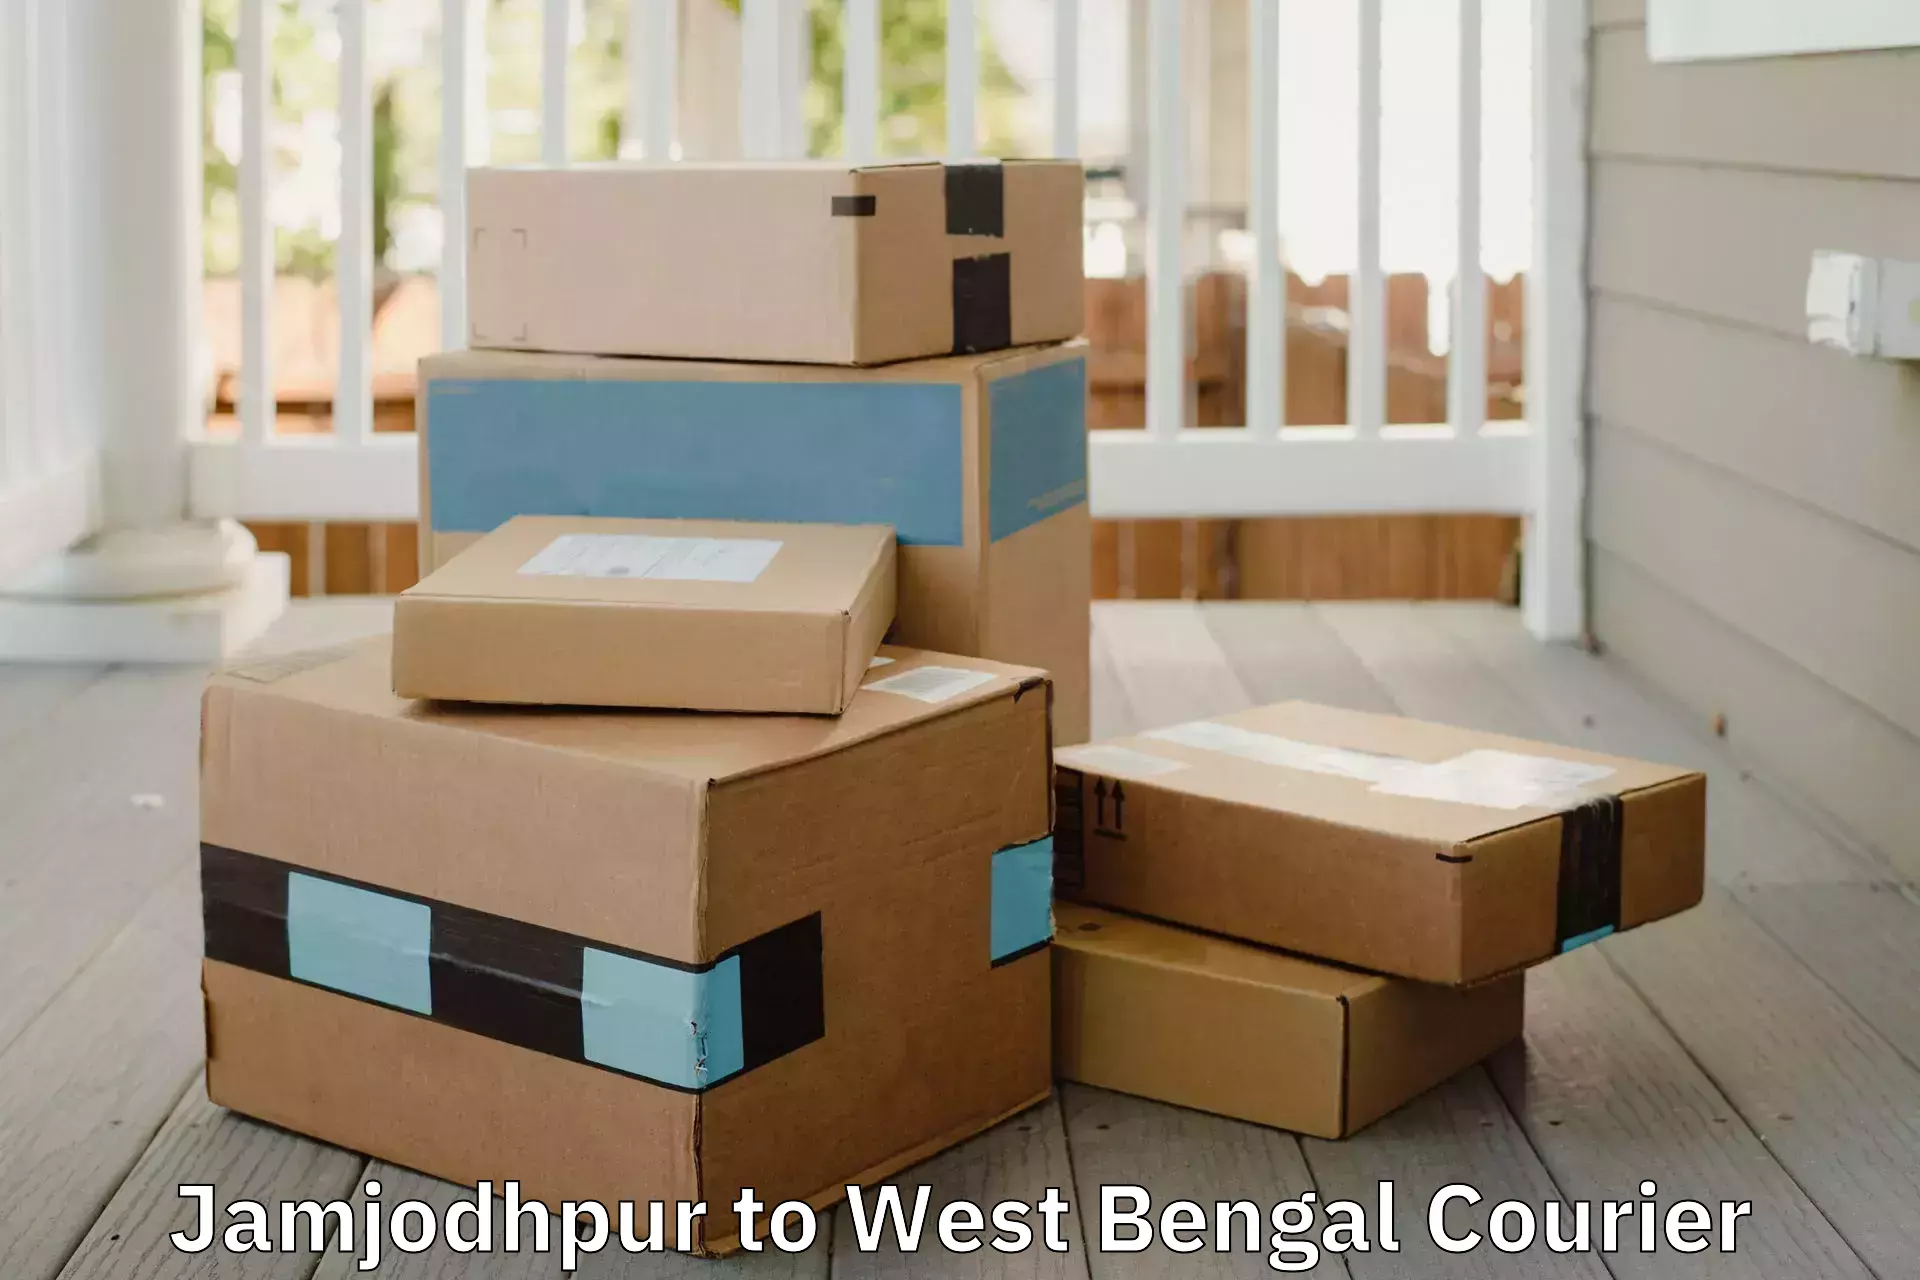 Furniture moving experts in Jamjodhpur to Mirzapur Bardhaman